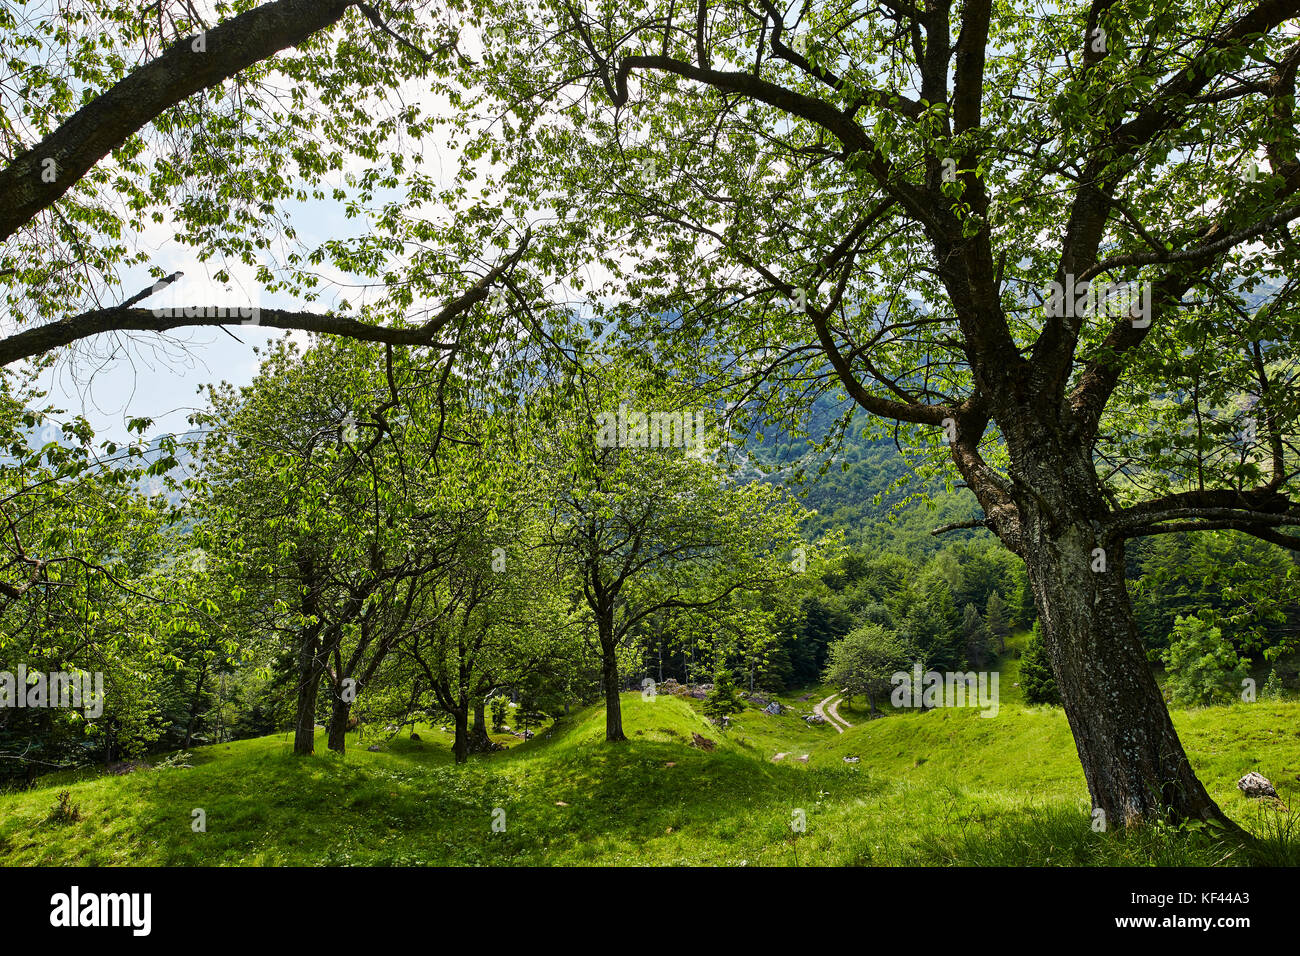 Sentiero dei Grandi Alberi, Recoaro, Vicenza, Italy © 2017 Davide Marzotto  Stock Photo - Alamy